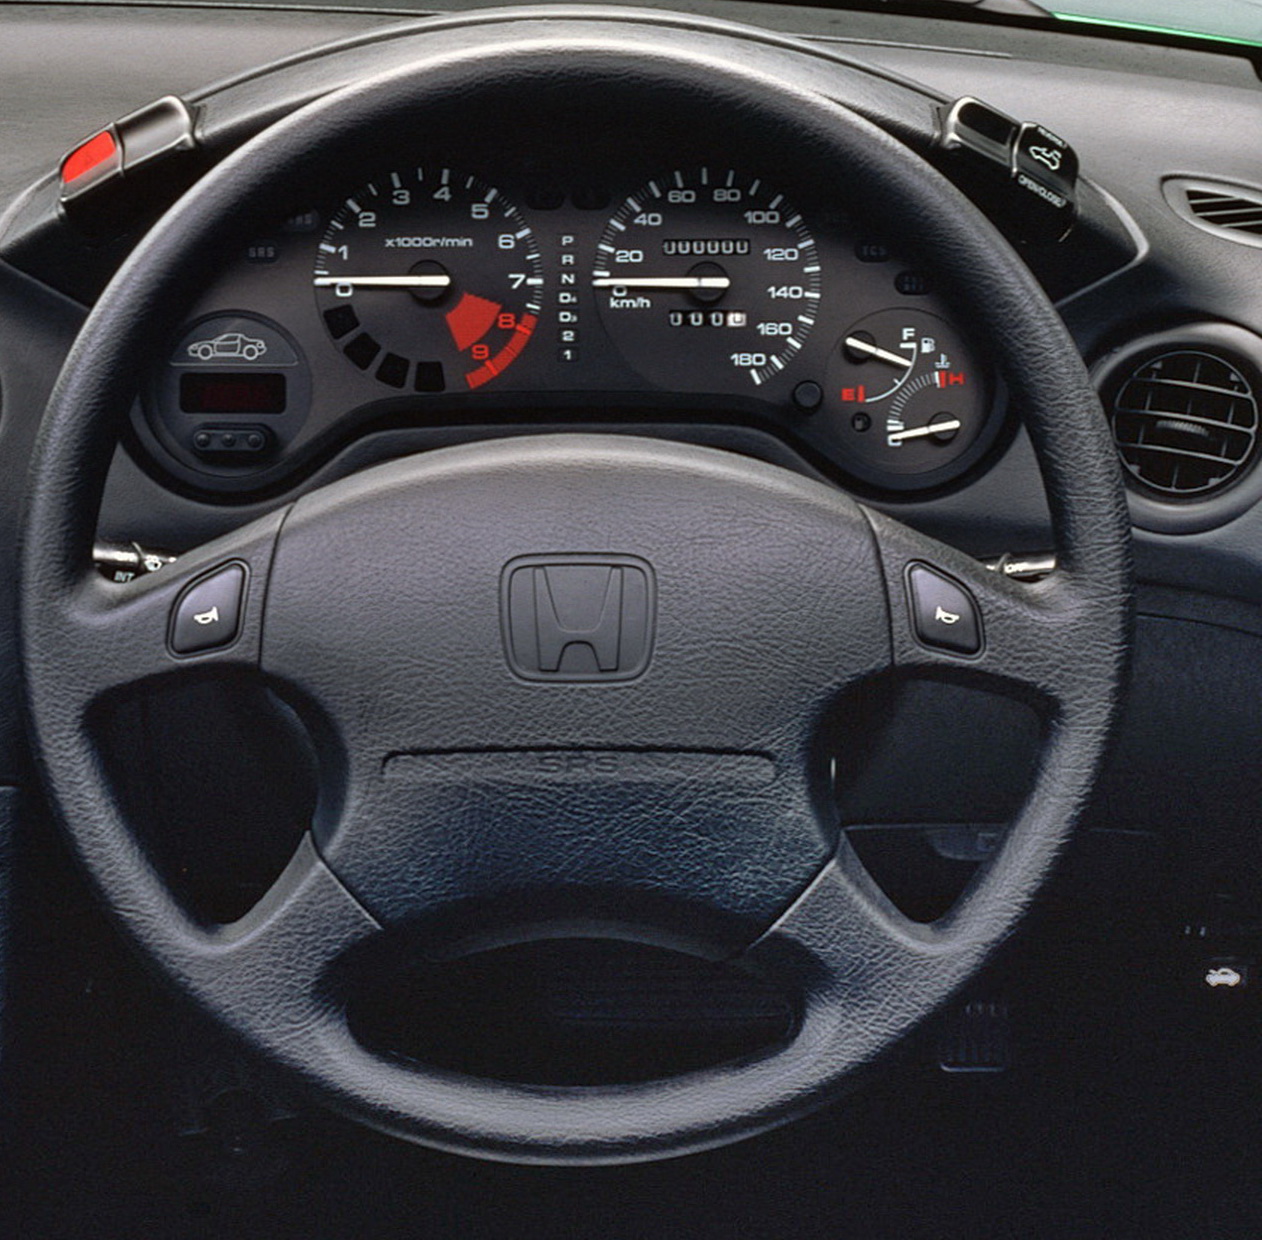 Honda CR-X del Sol VTi 1992-1998